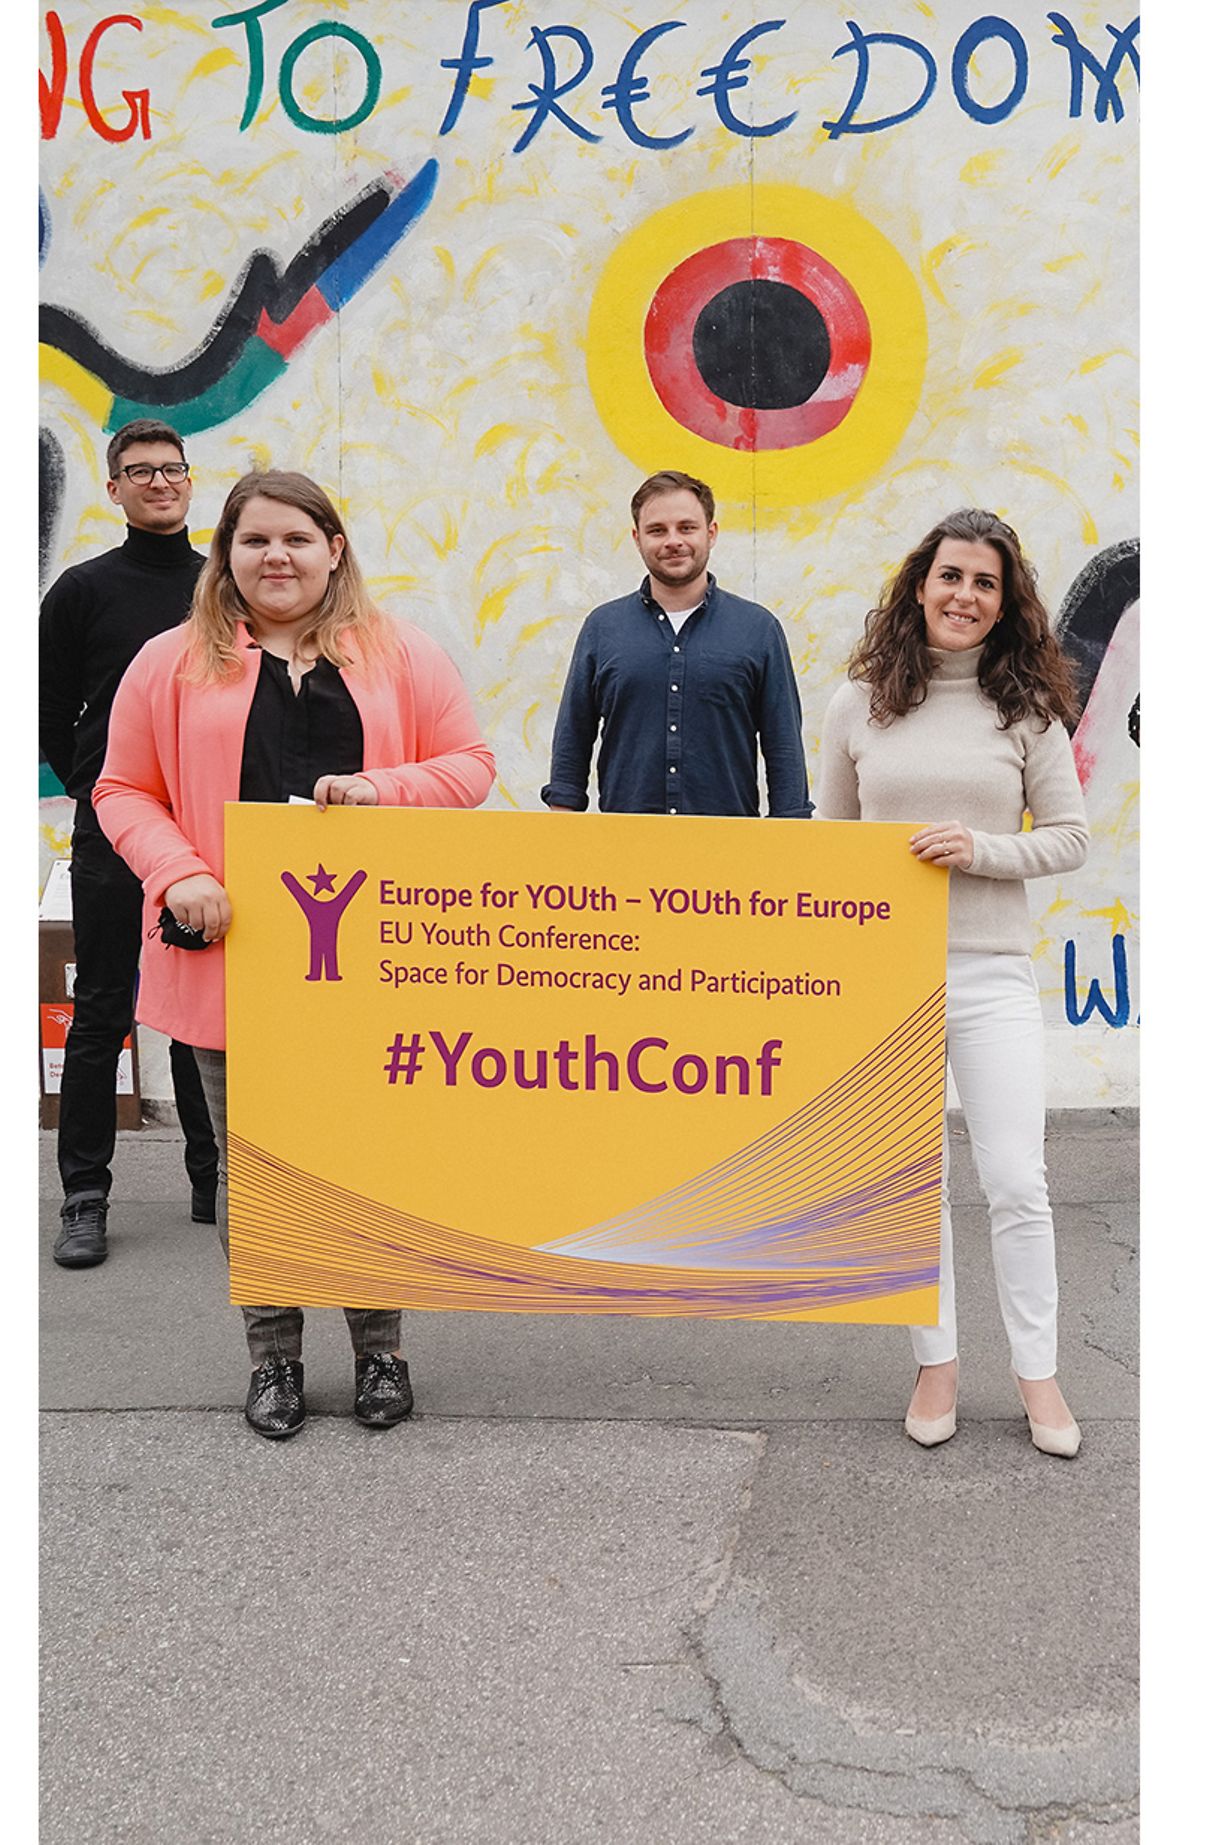 Jugendliche halten ein Plakat des Europäischen Jugenddemokratiekongresses hoch